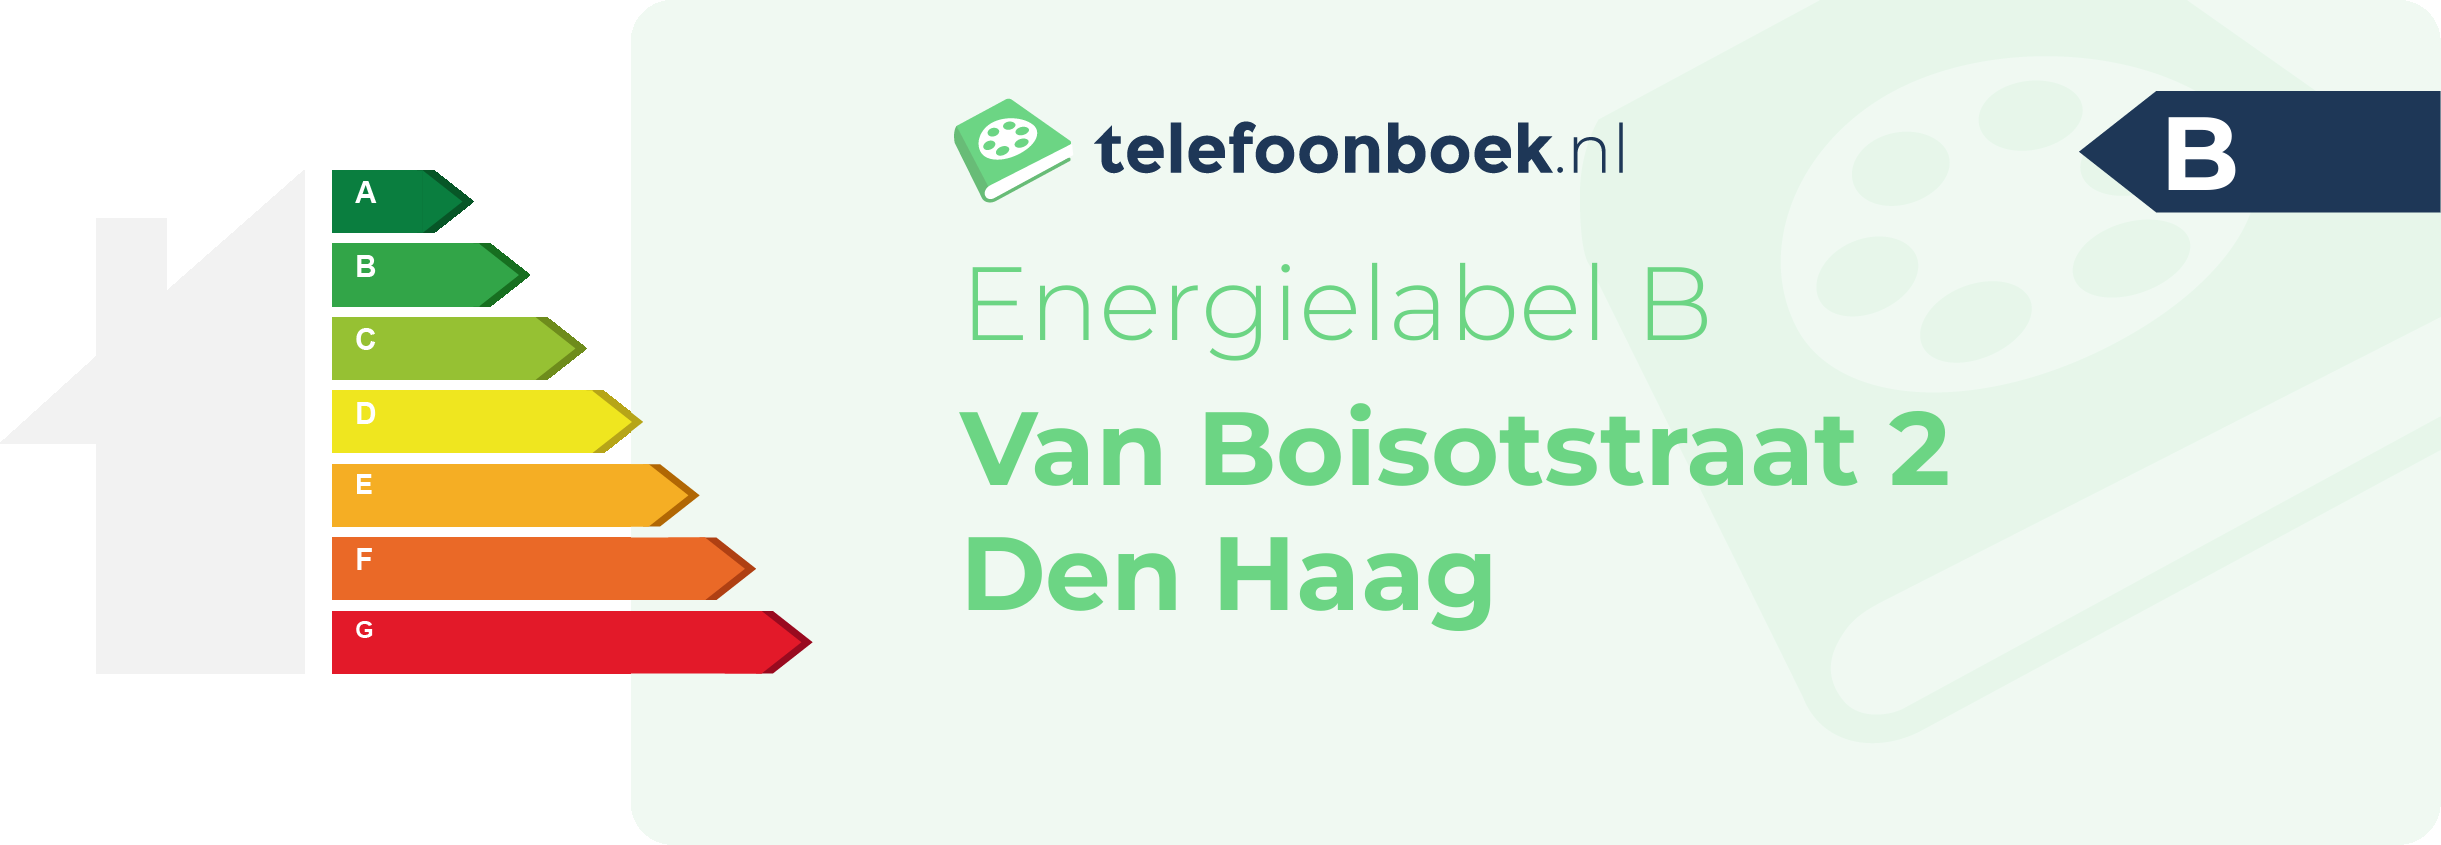 Energielabel Van Boisotstraat 2 Den Haag